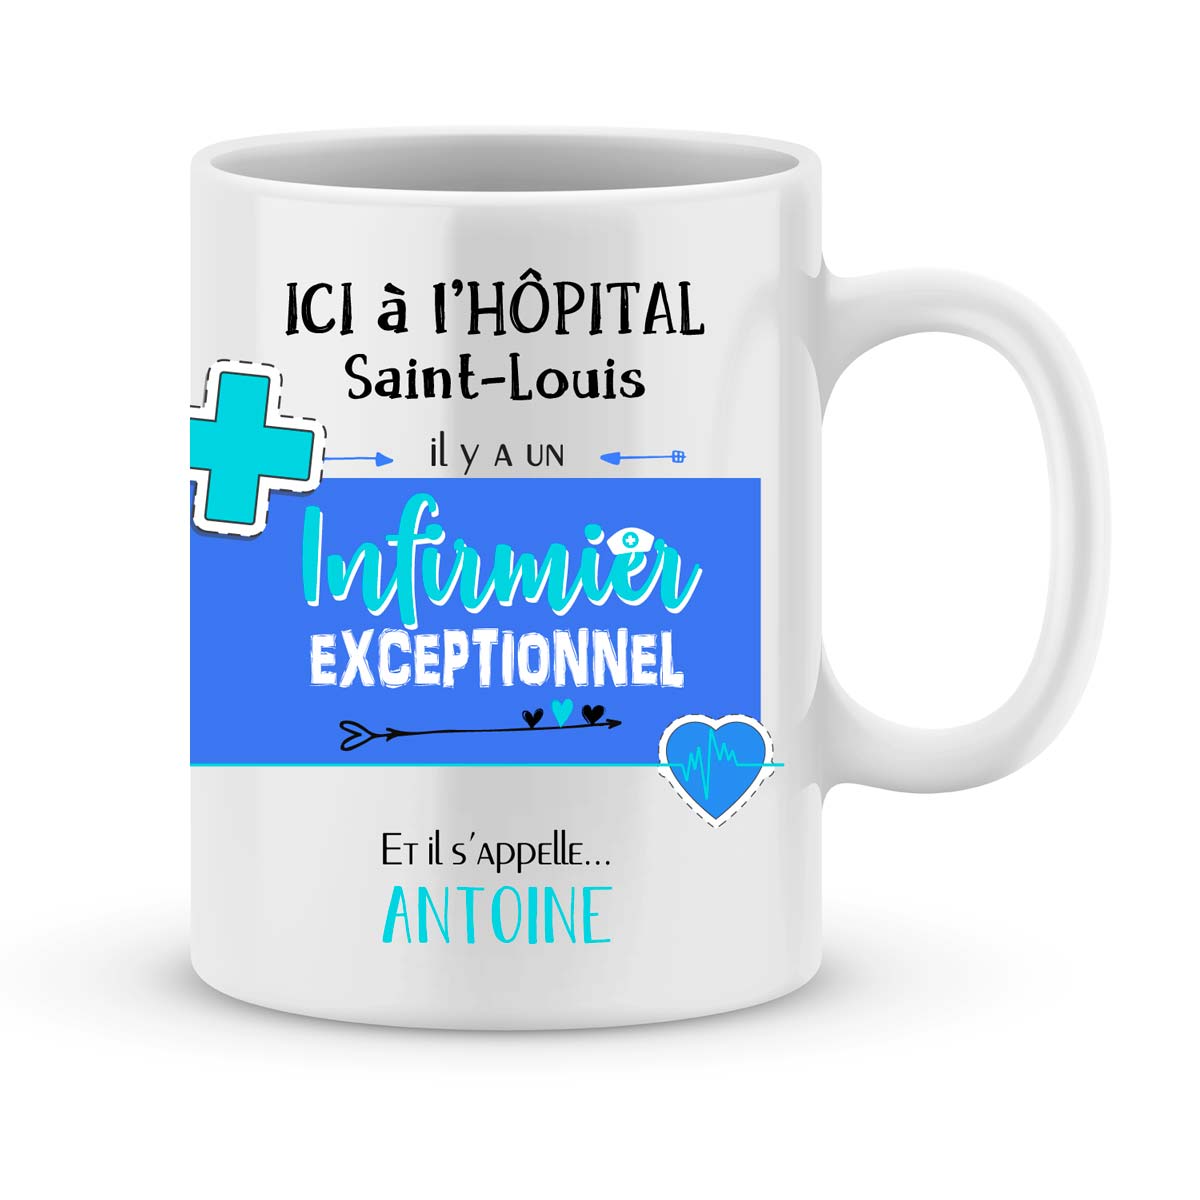 Cadeau pour infirmier - mug personnalisé pour infirmier